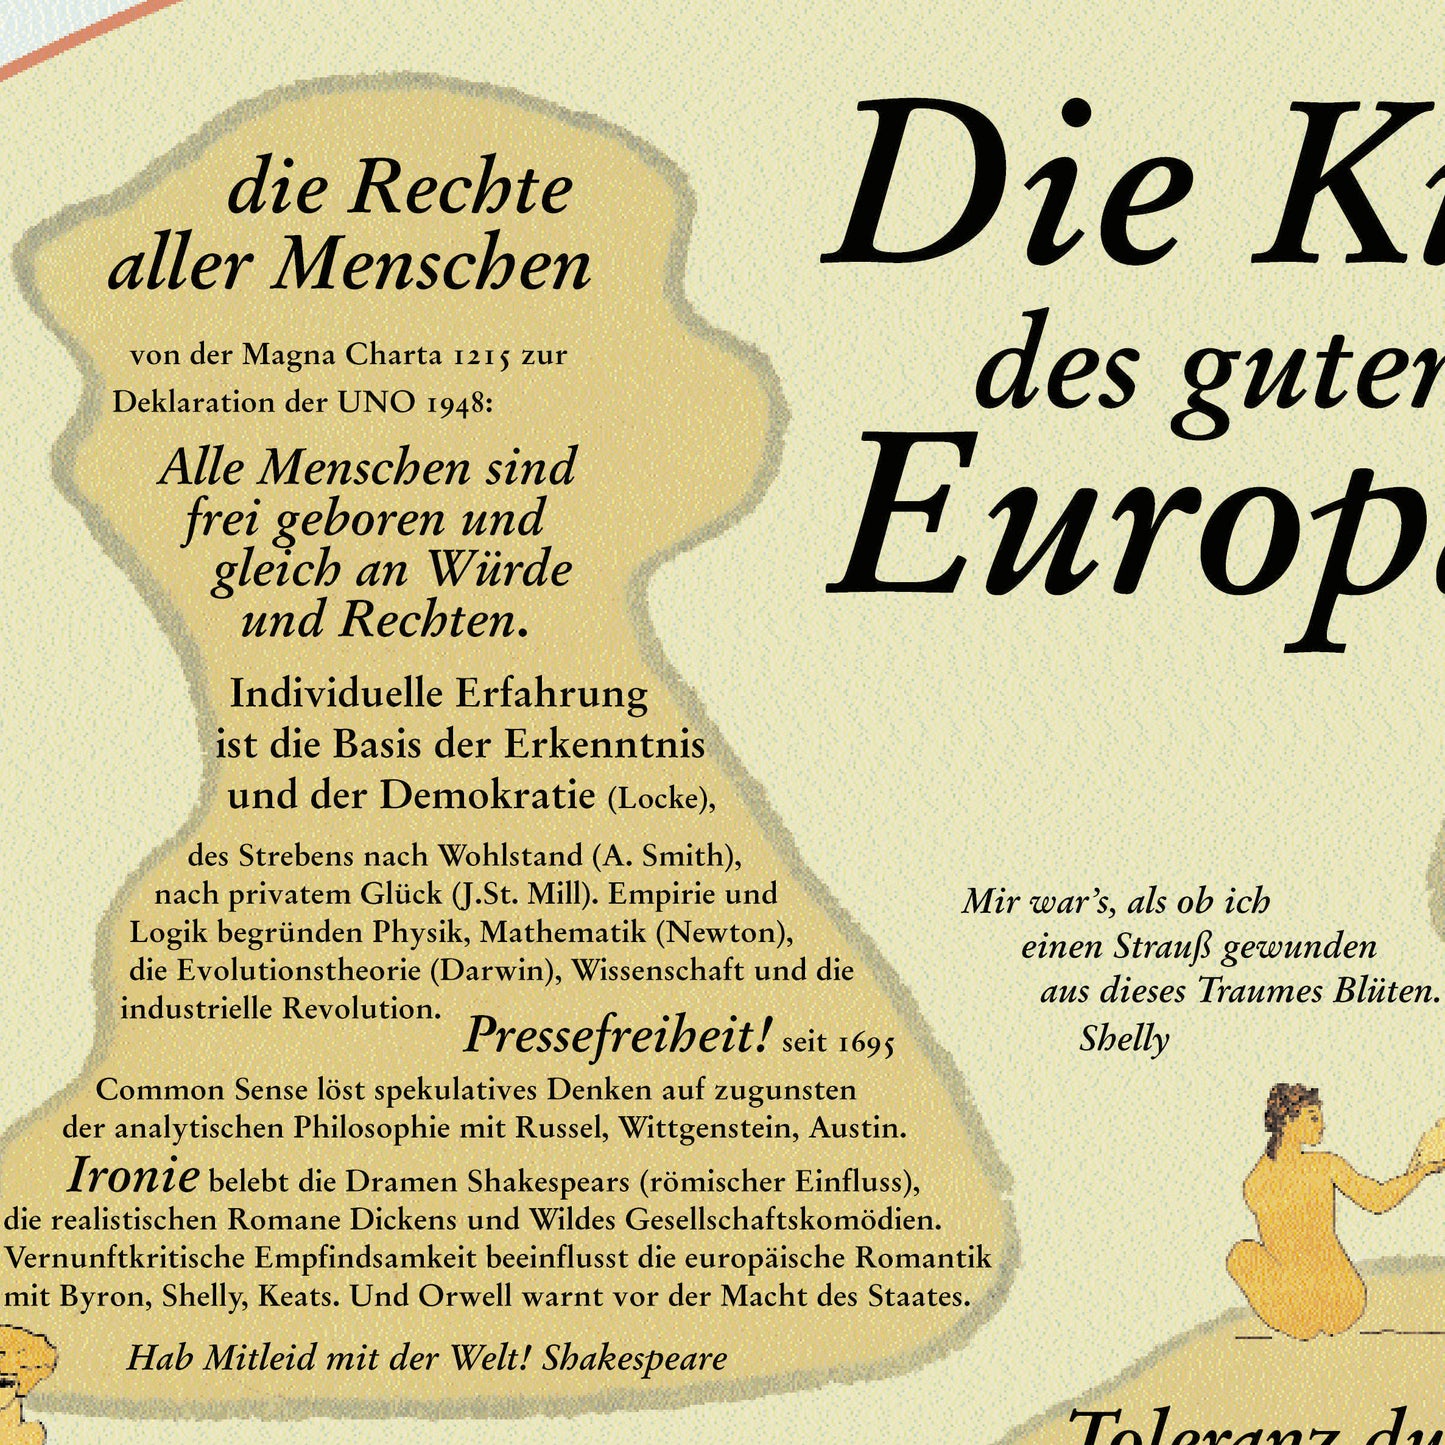 Poster "Die Kultur des guten alten Europa"